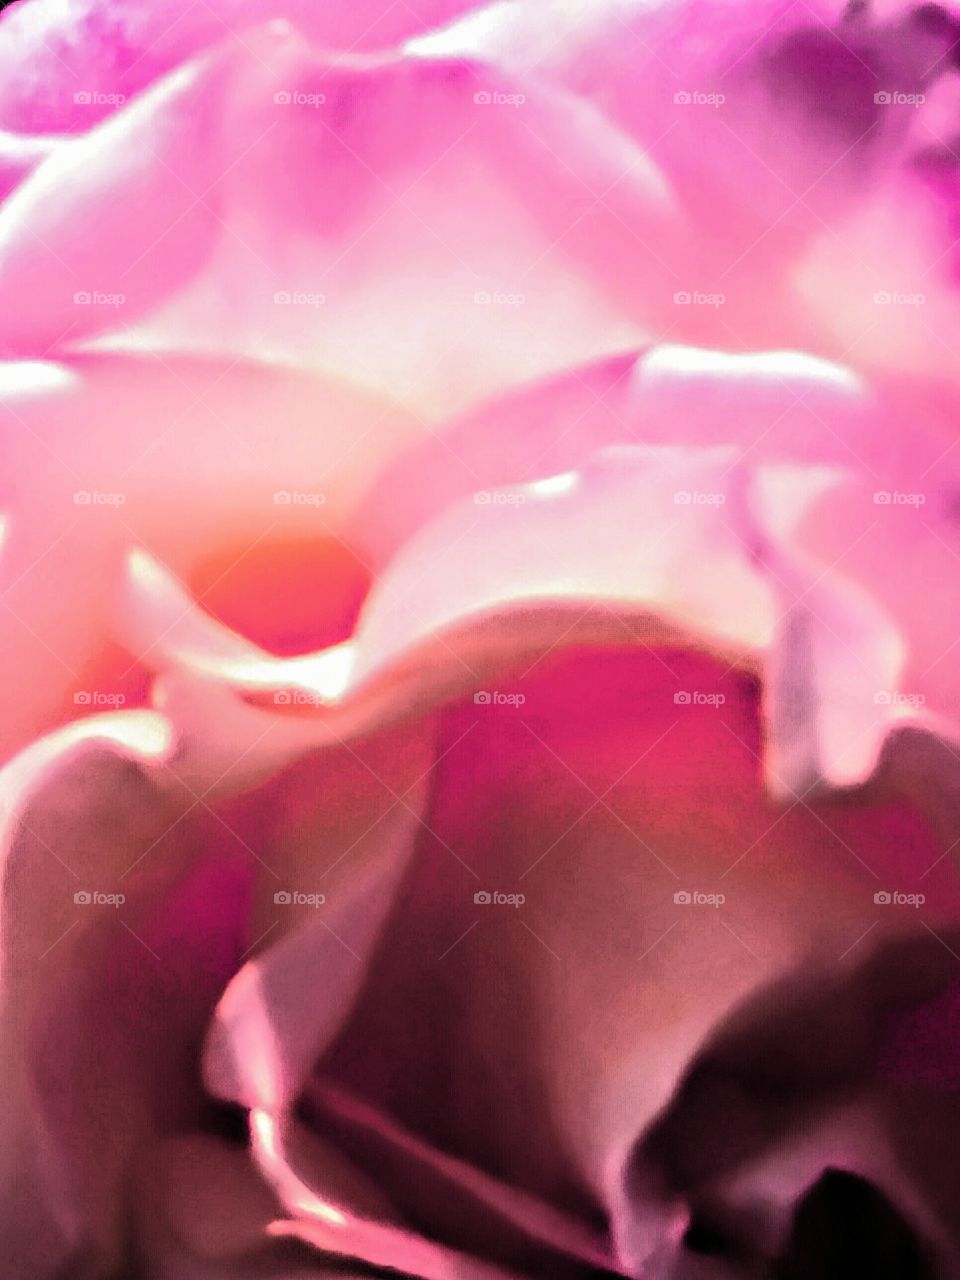 Macroshot of Pink Rose Petals